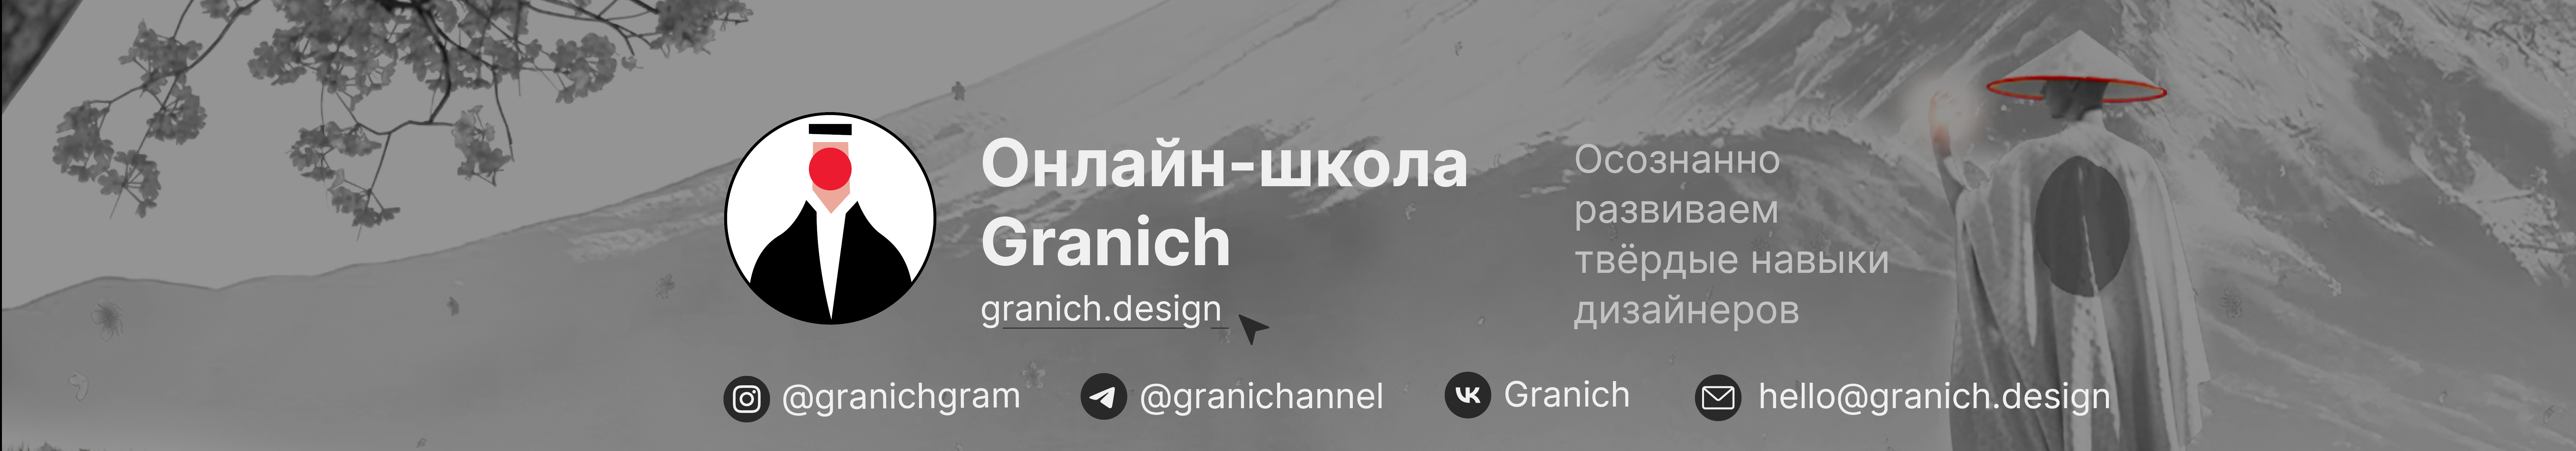 Онлайн-школа Granich's profile banner